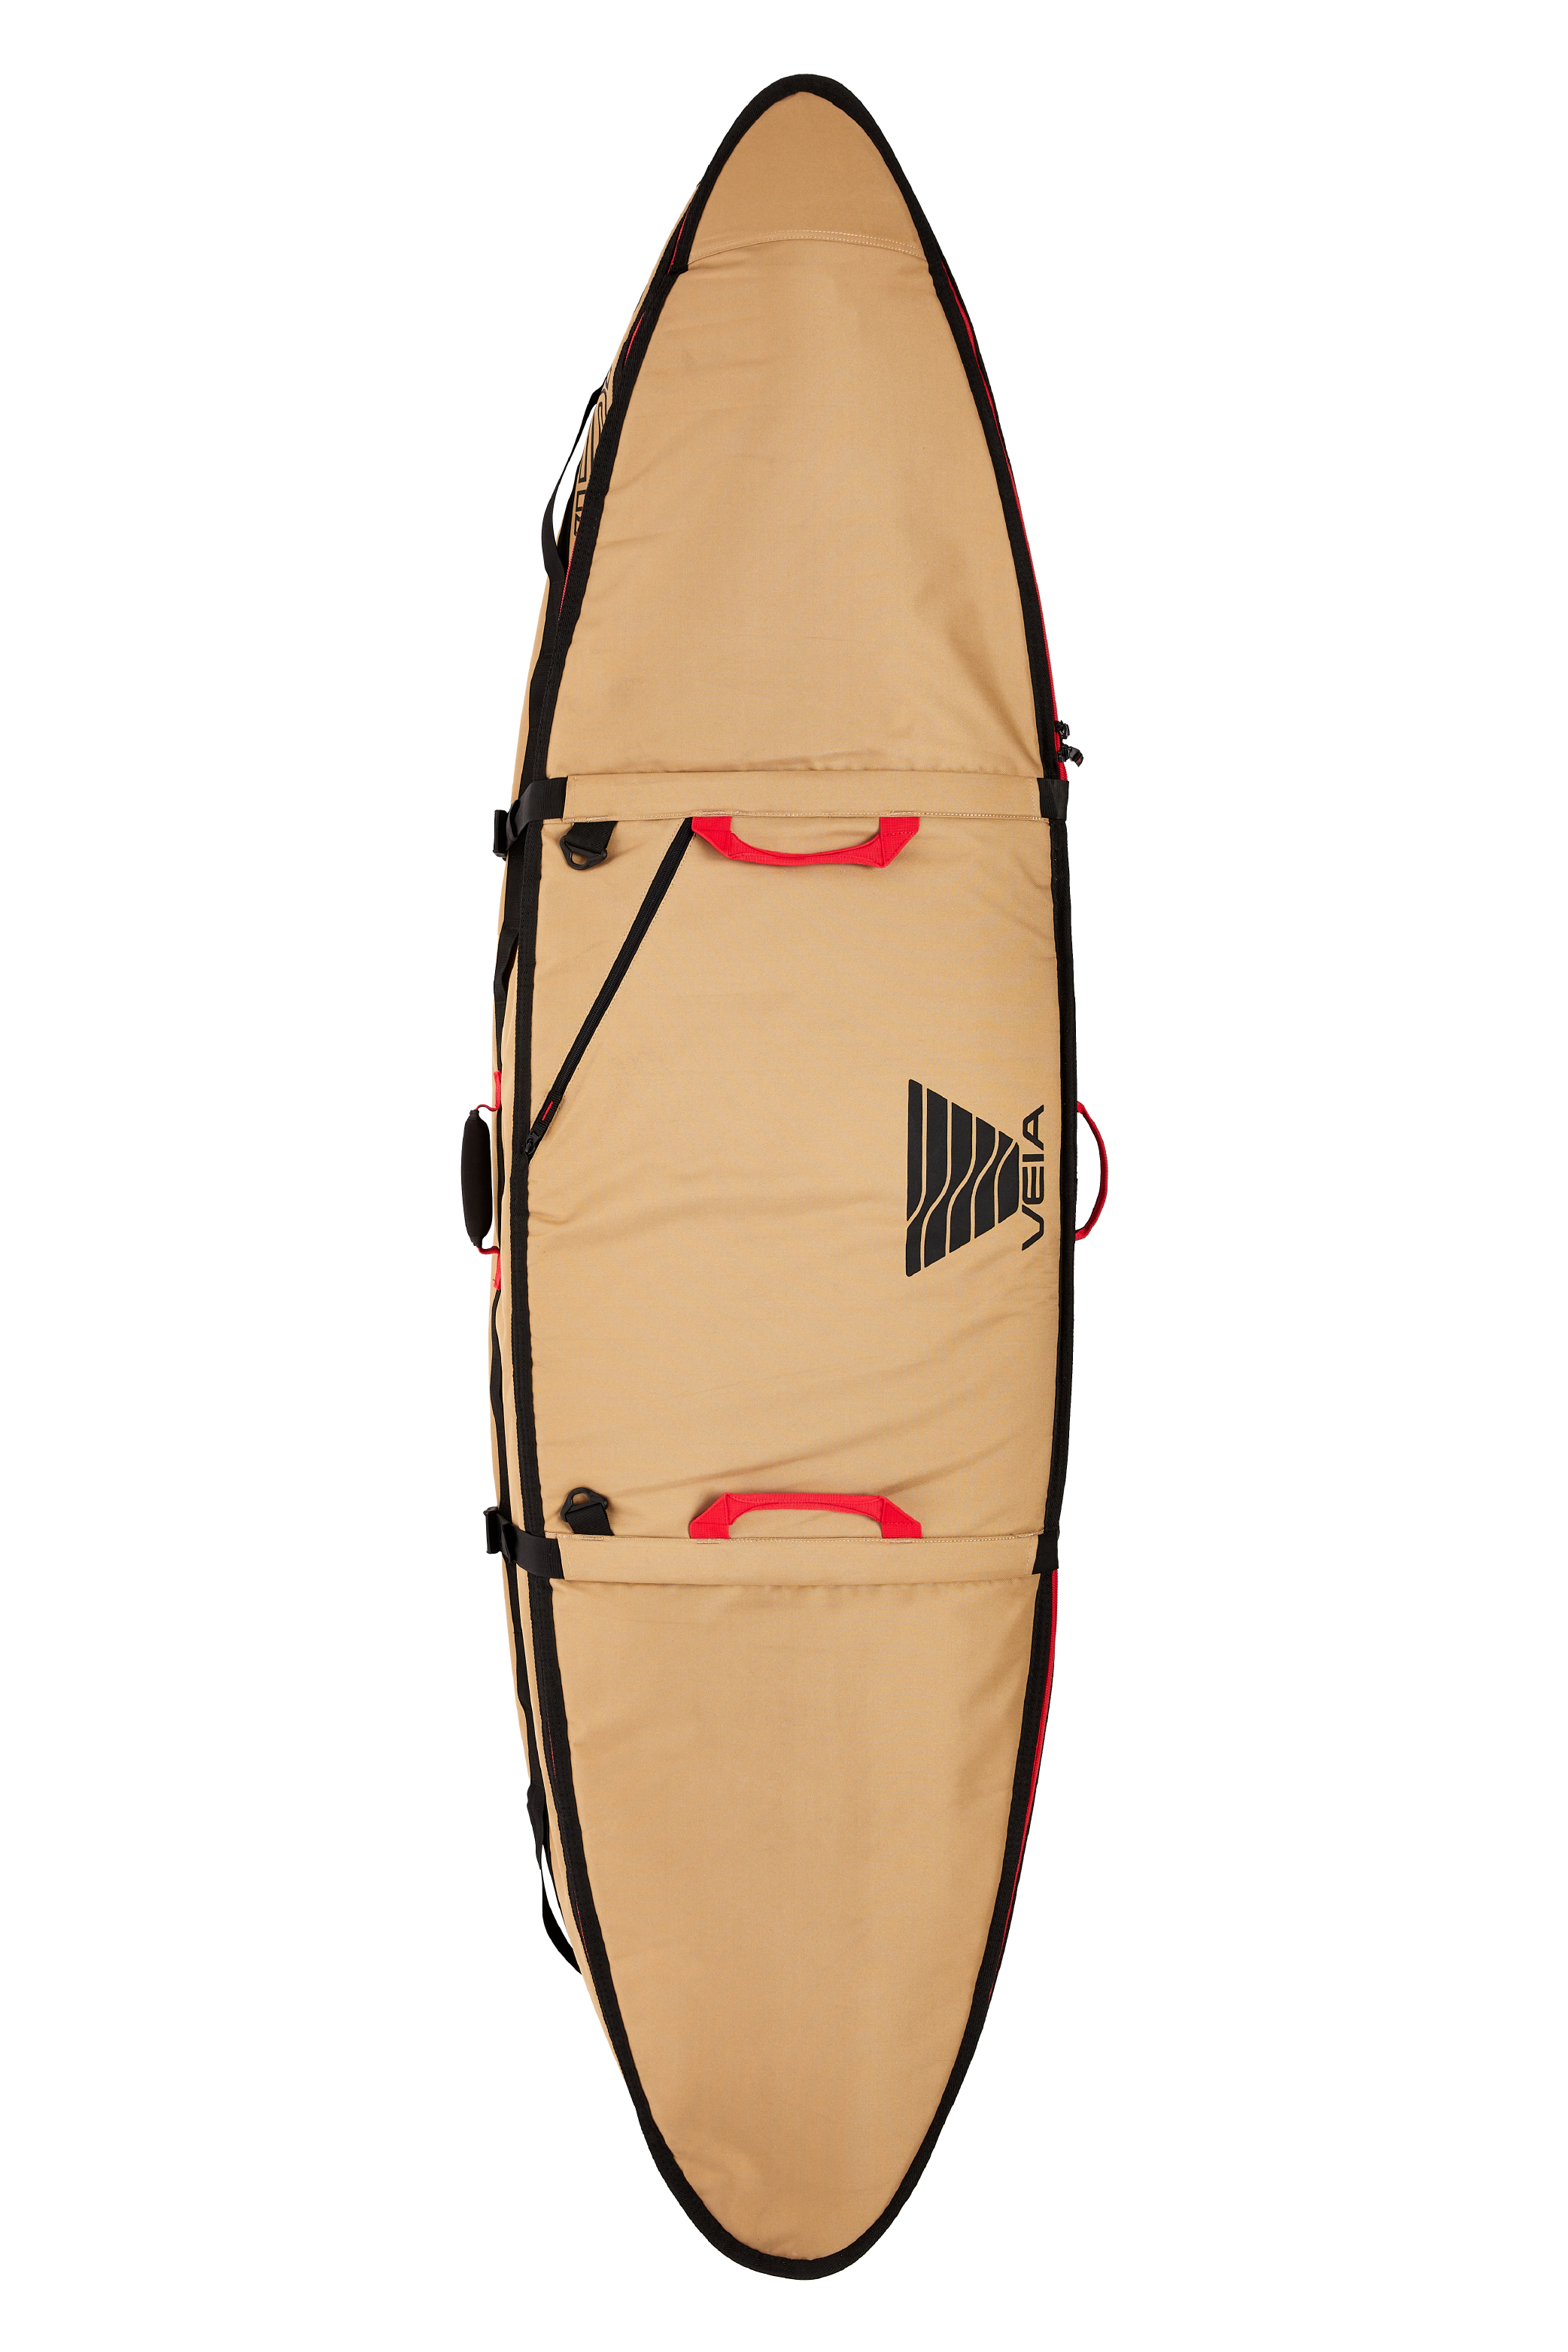 Pro-Lite Session Day Bag Shortboard – Proctor Surfboard Shop